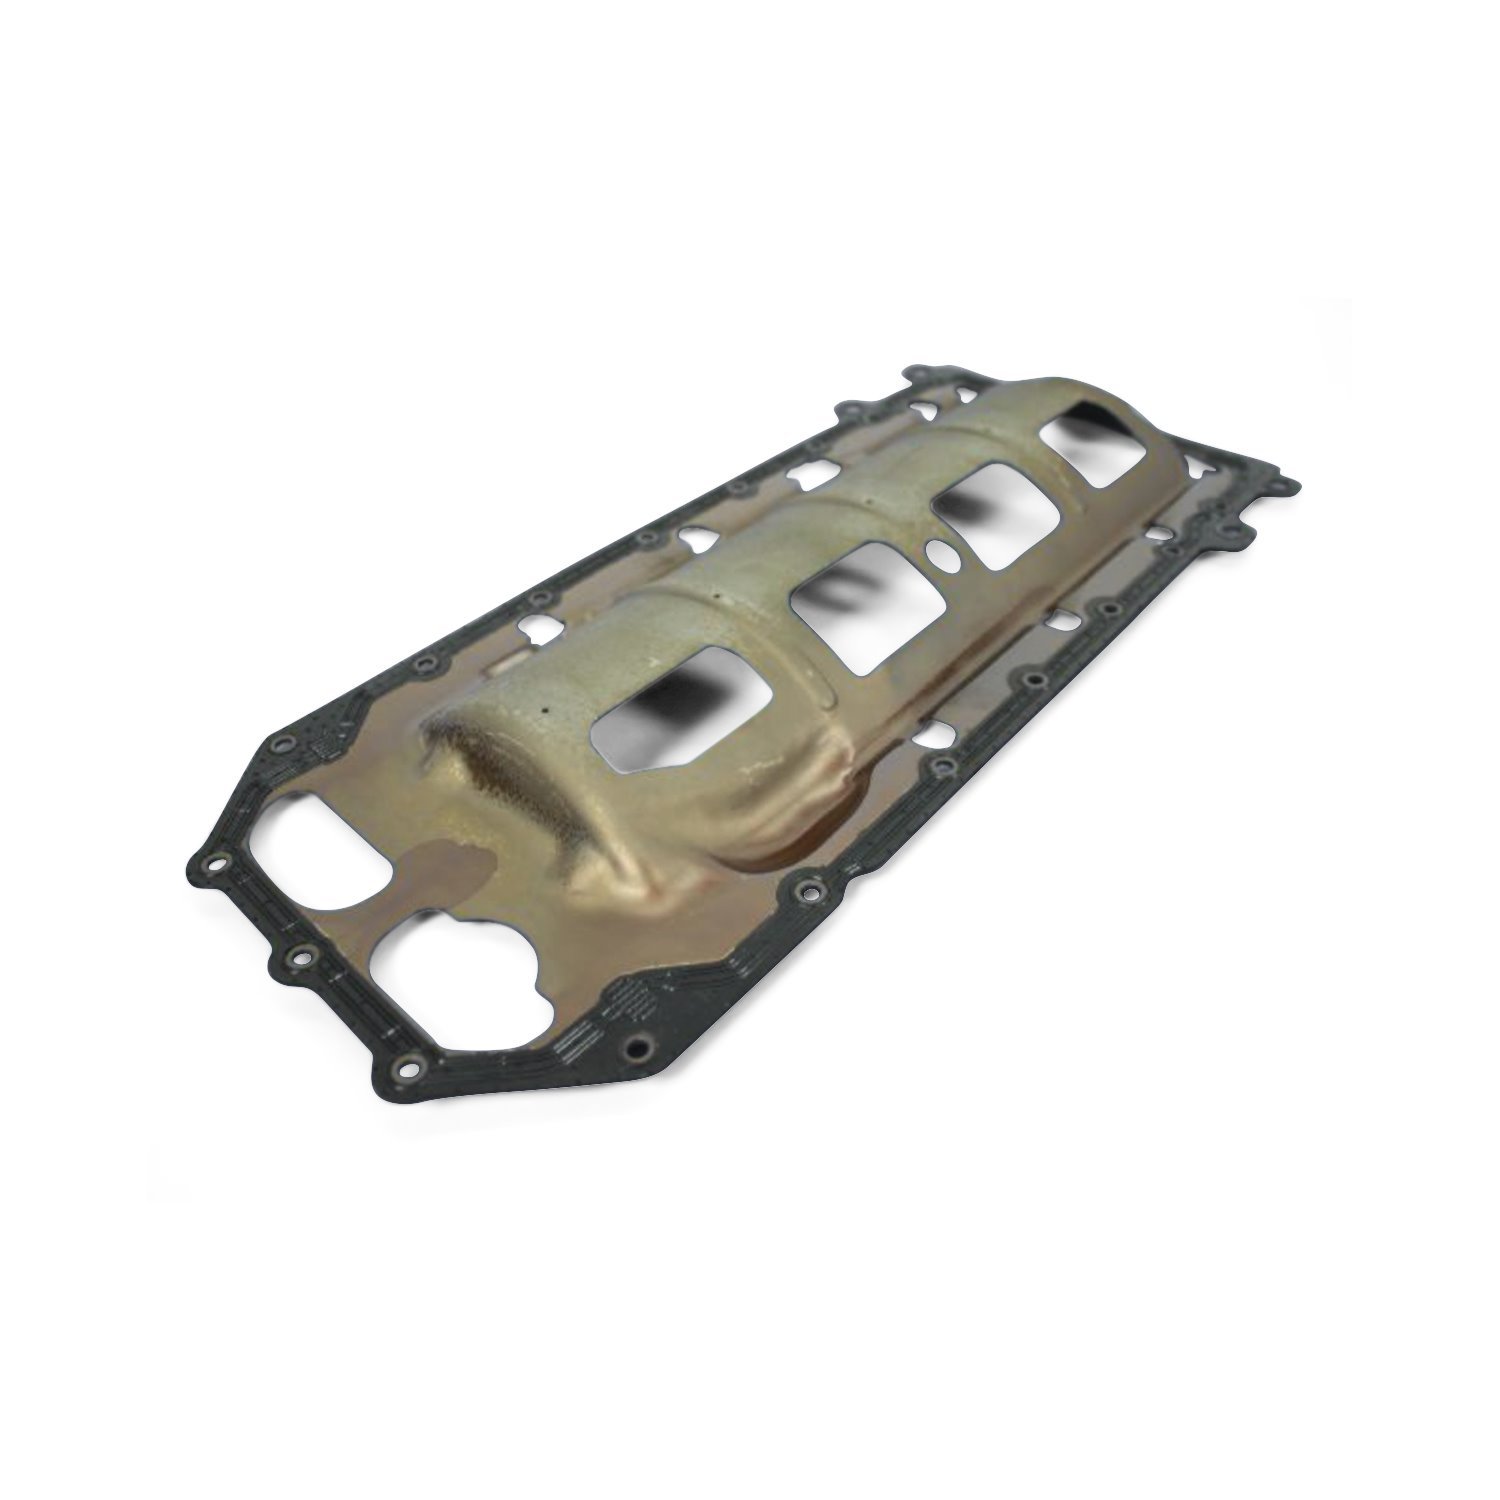 04792874AA Oil Pan Gasket for Select Mopar 5.7L V8